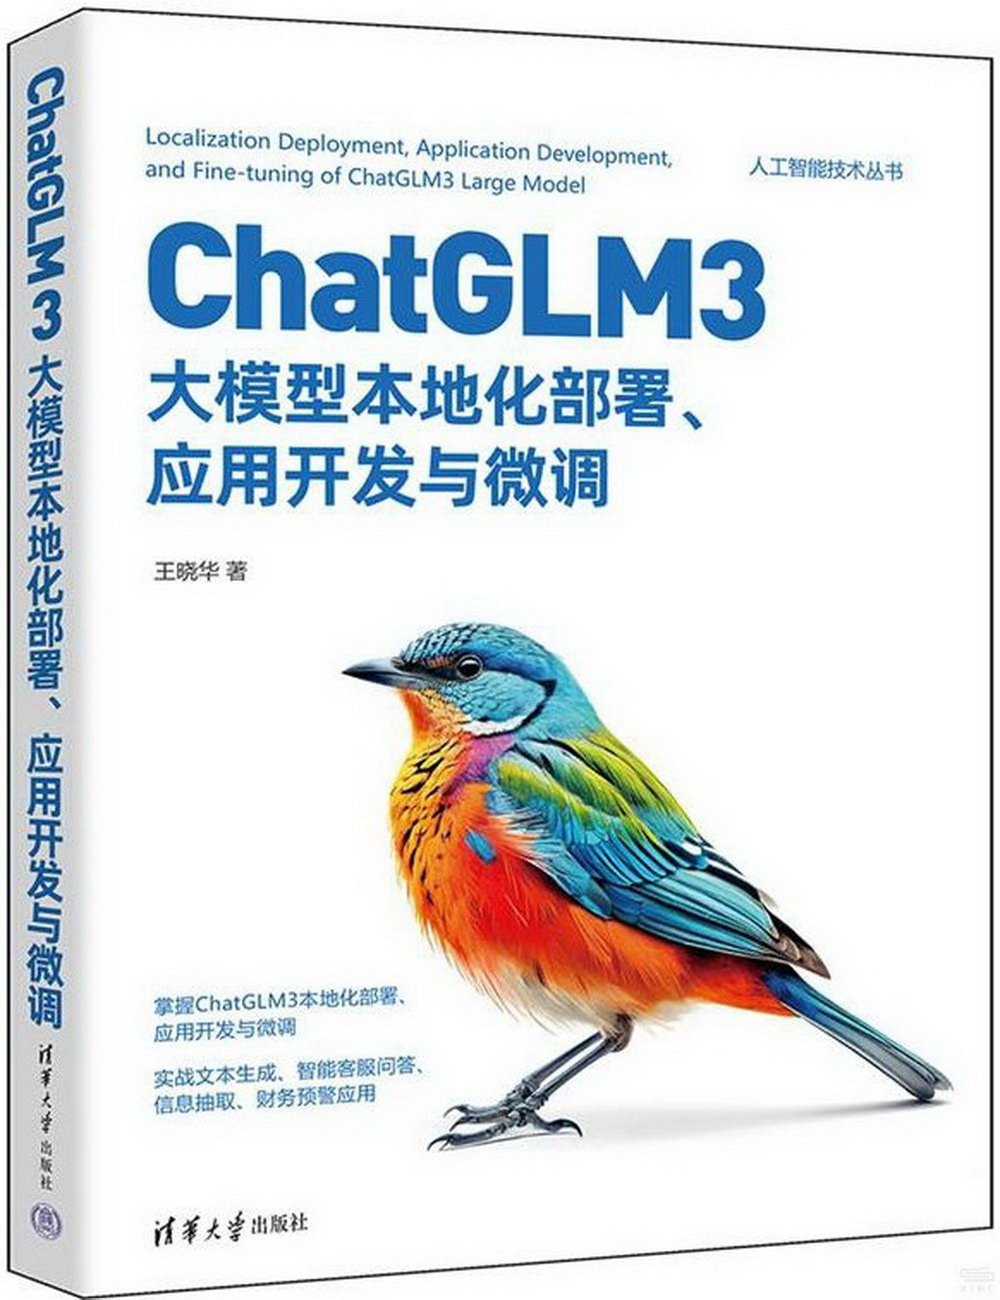 ChatGLM3大模型本地化部署、應用開發與微調